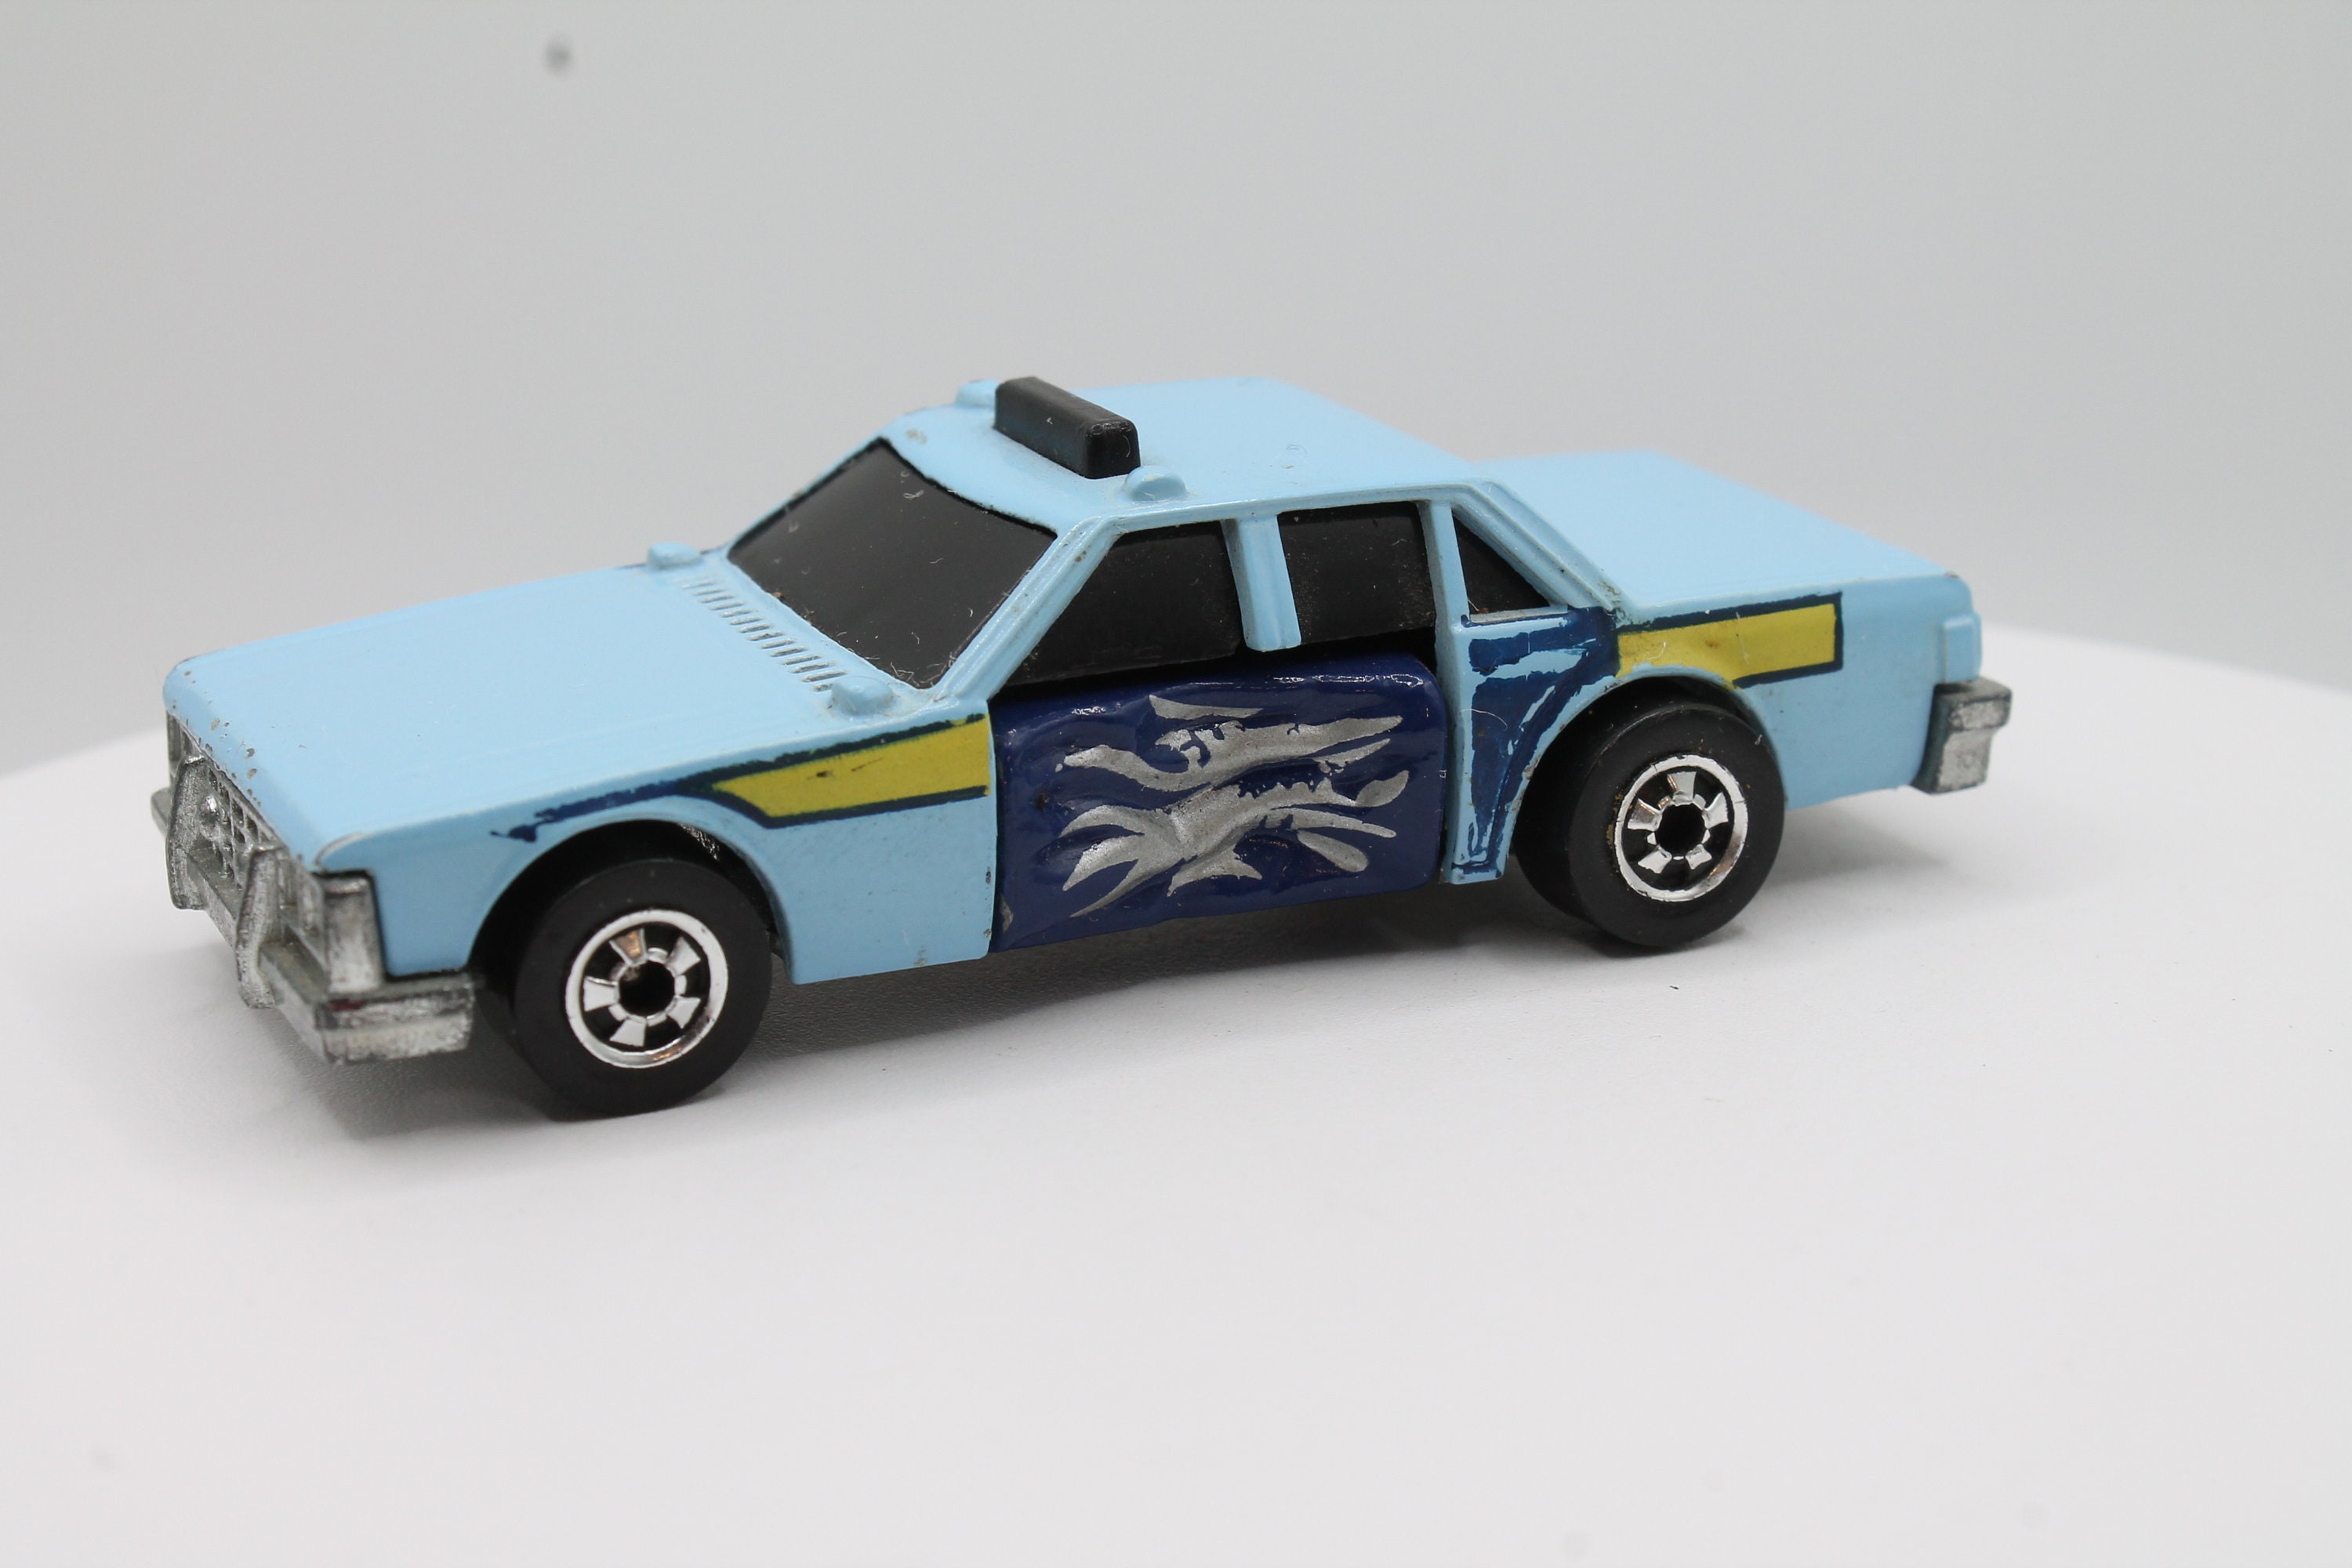 Vintage 1983 Hot Wheels Crack Ups Crunch Chief Blue State Police Car Crash